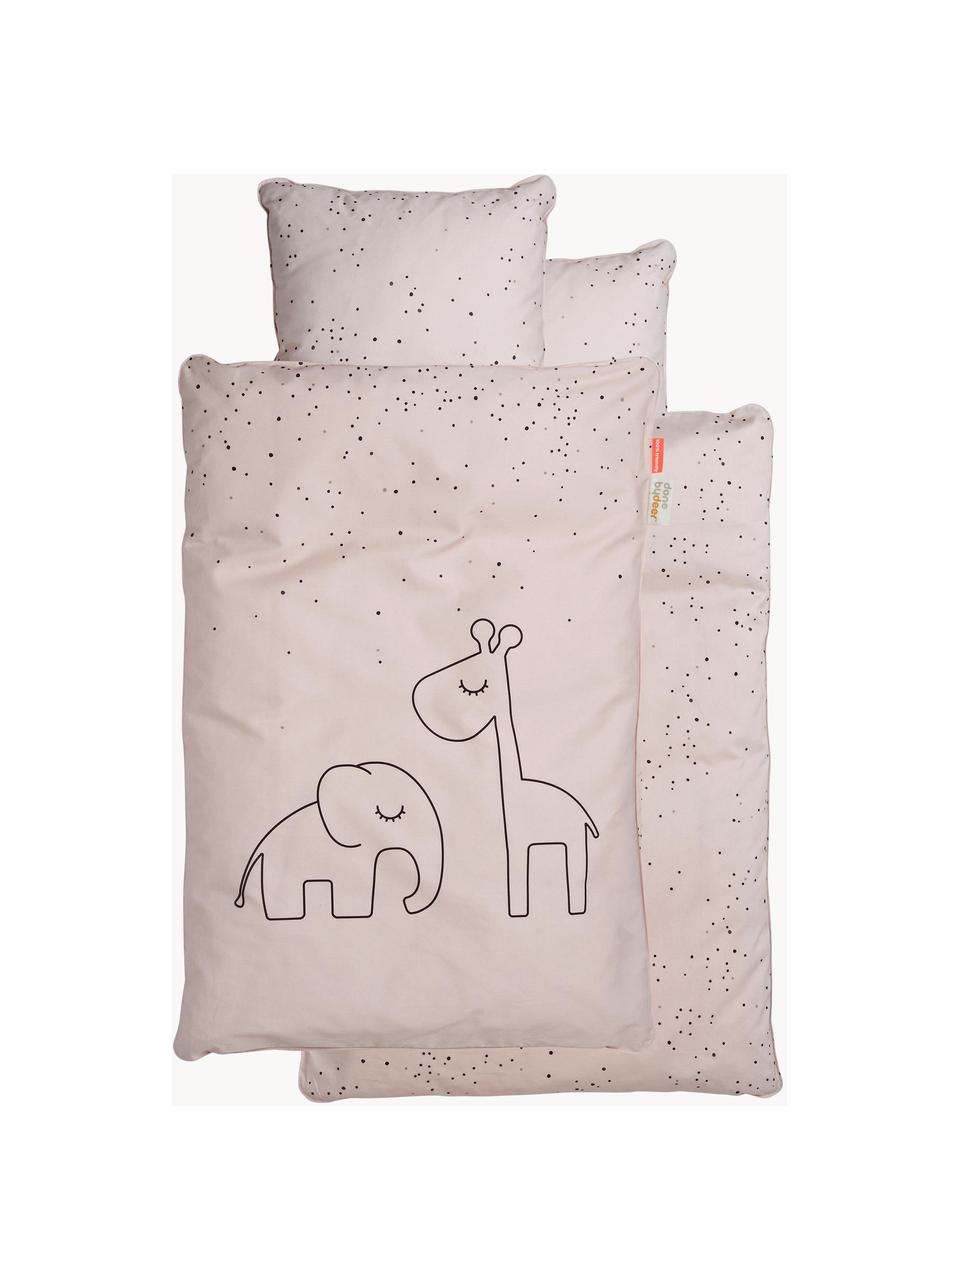 Detská posteľná bielizeň Dreamy Dots, 100 % bavlna, Oeko-Tex certifikát, Svetloružová, 100 x 140 cm + 1 vankúš 40 x 60 cm